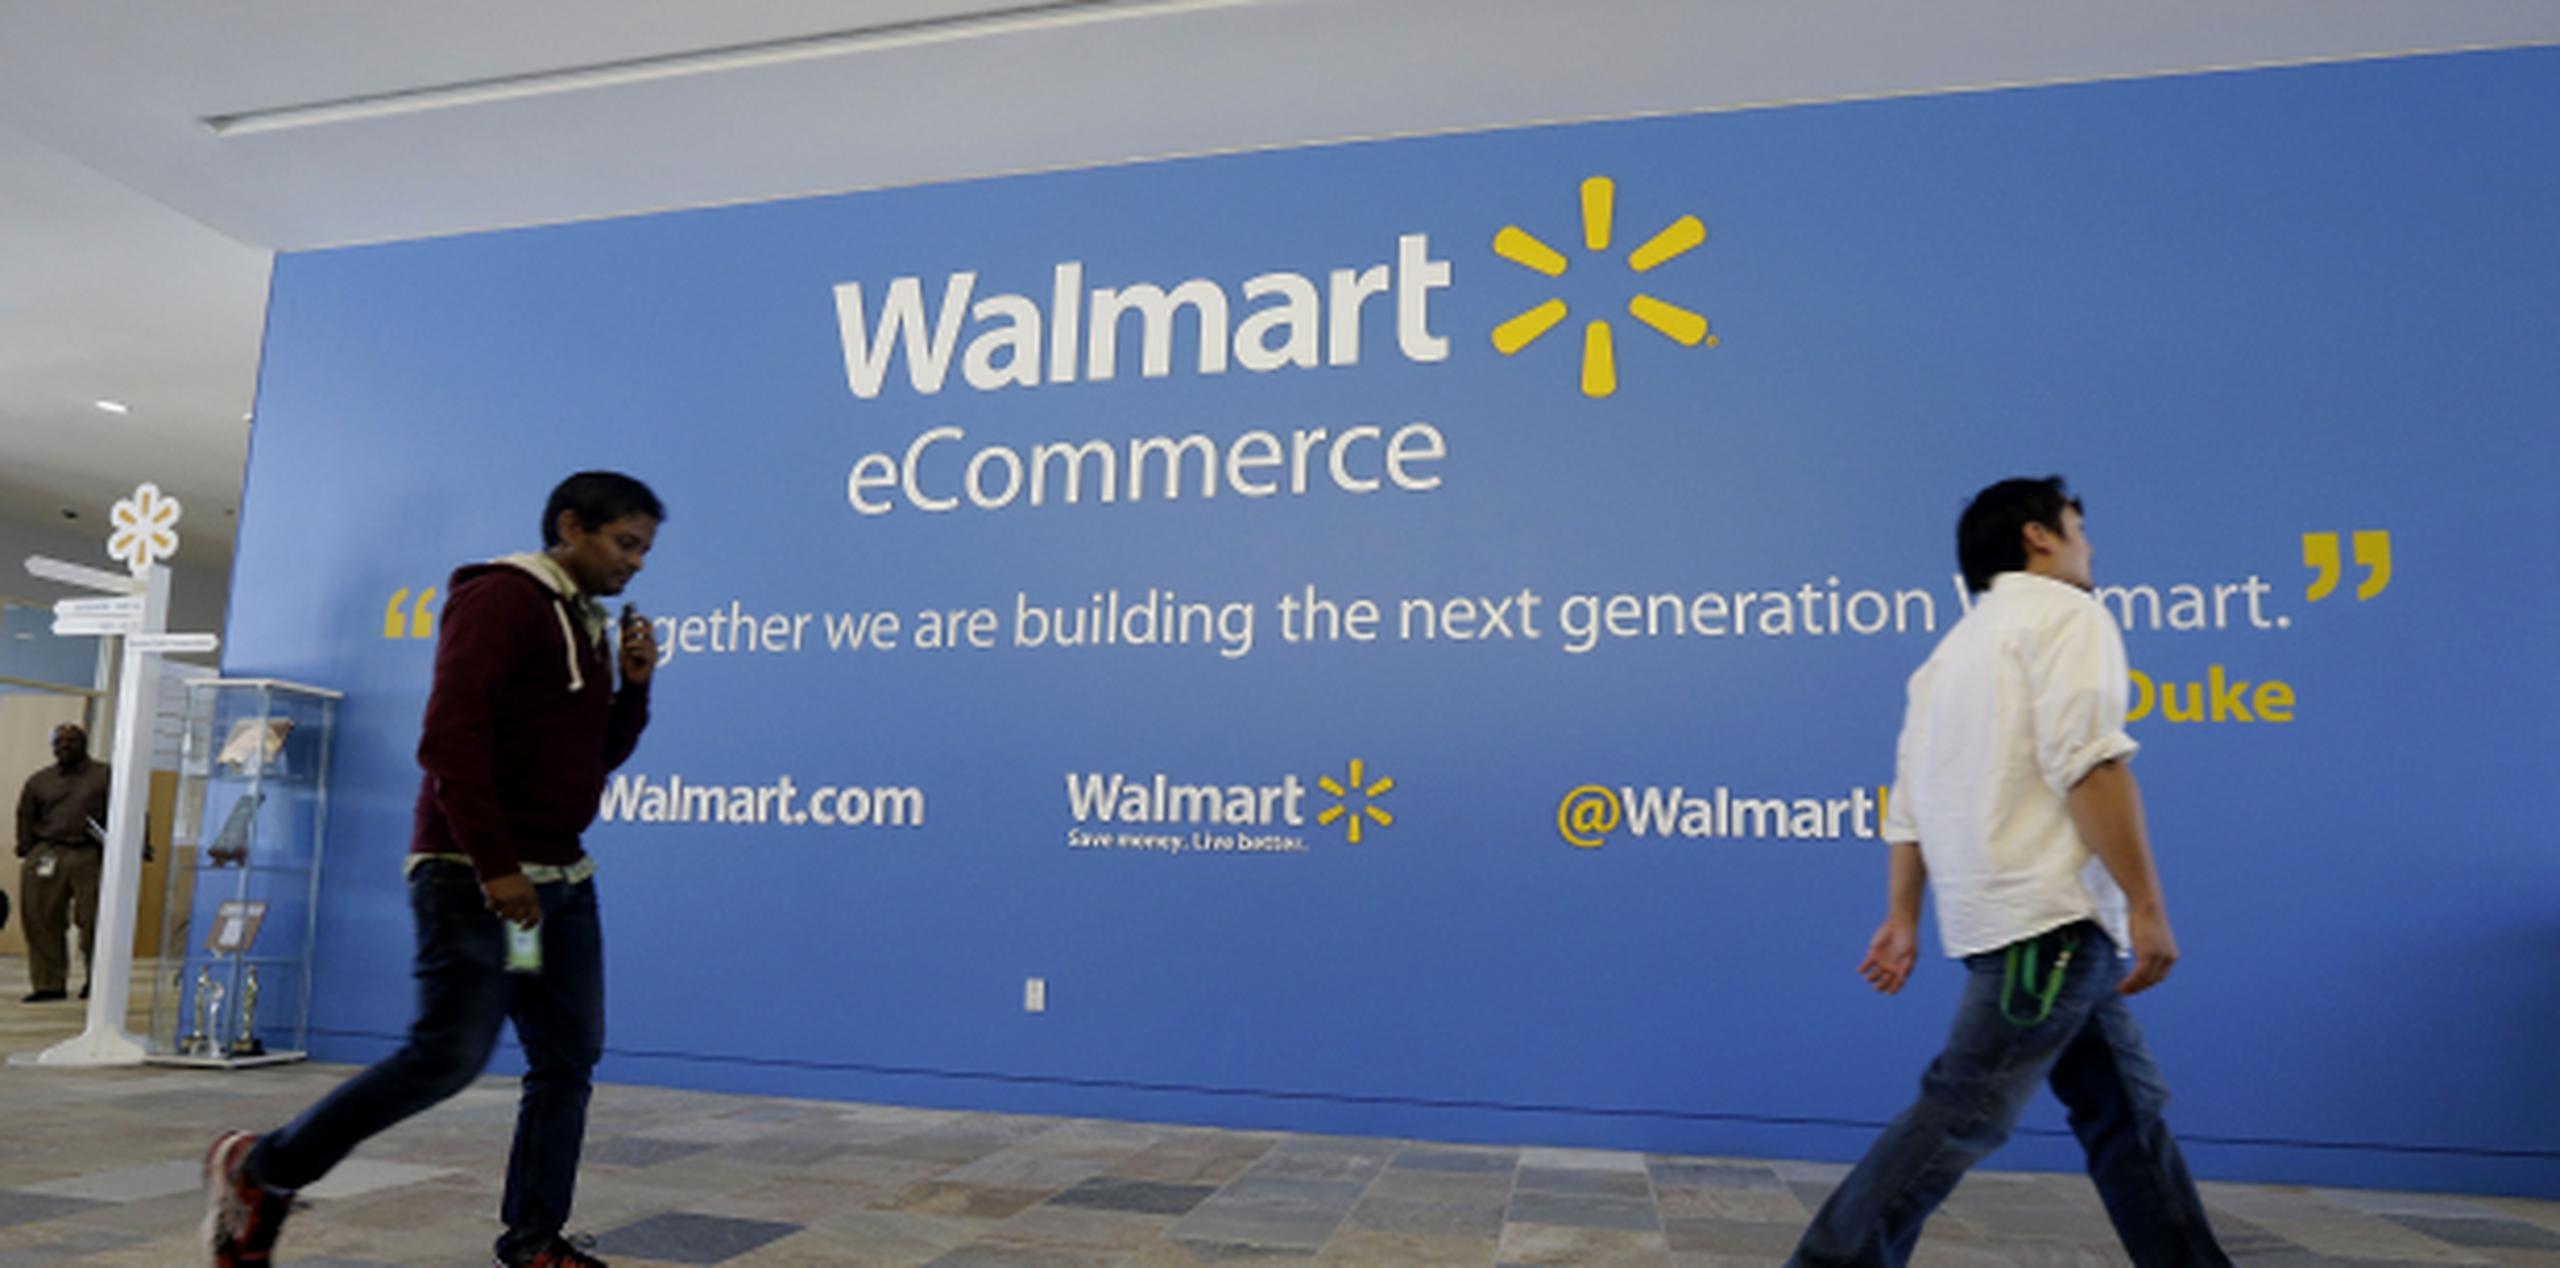 Walmart.com ahora ofrece 50 millones de productos, incluyendo las ventas indirectas, comparado con 10 millones hace un año. (AP /Jeff Chiu)